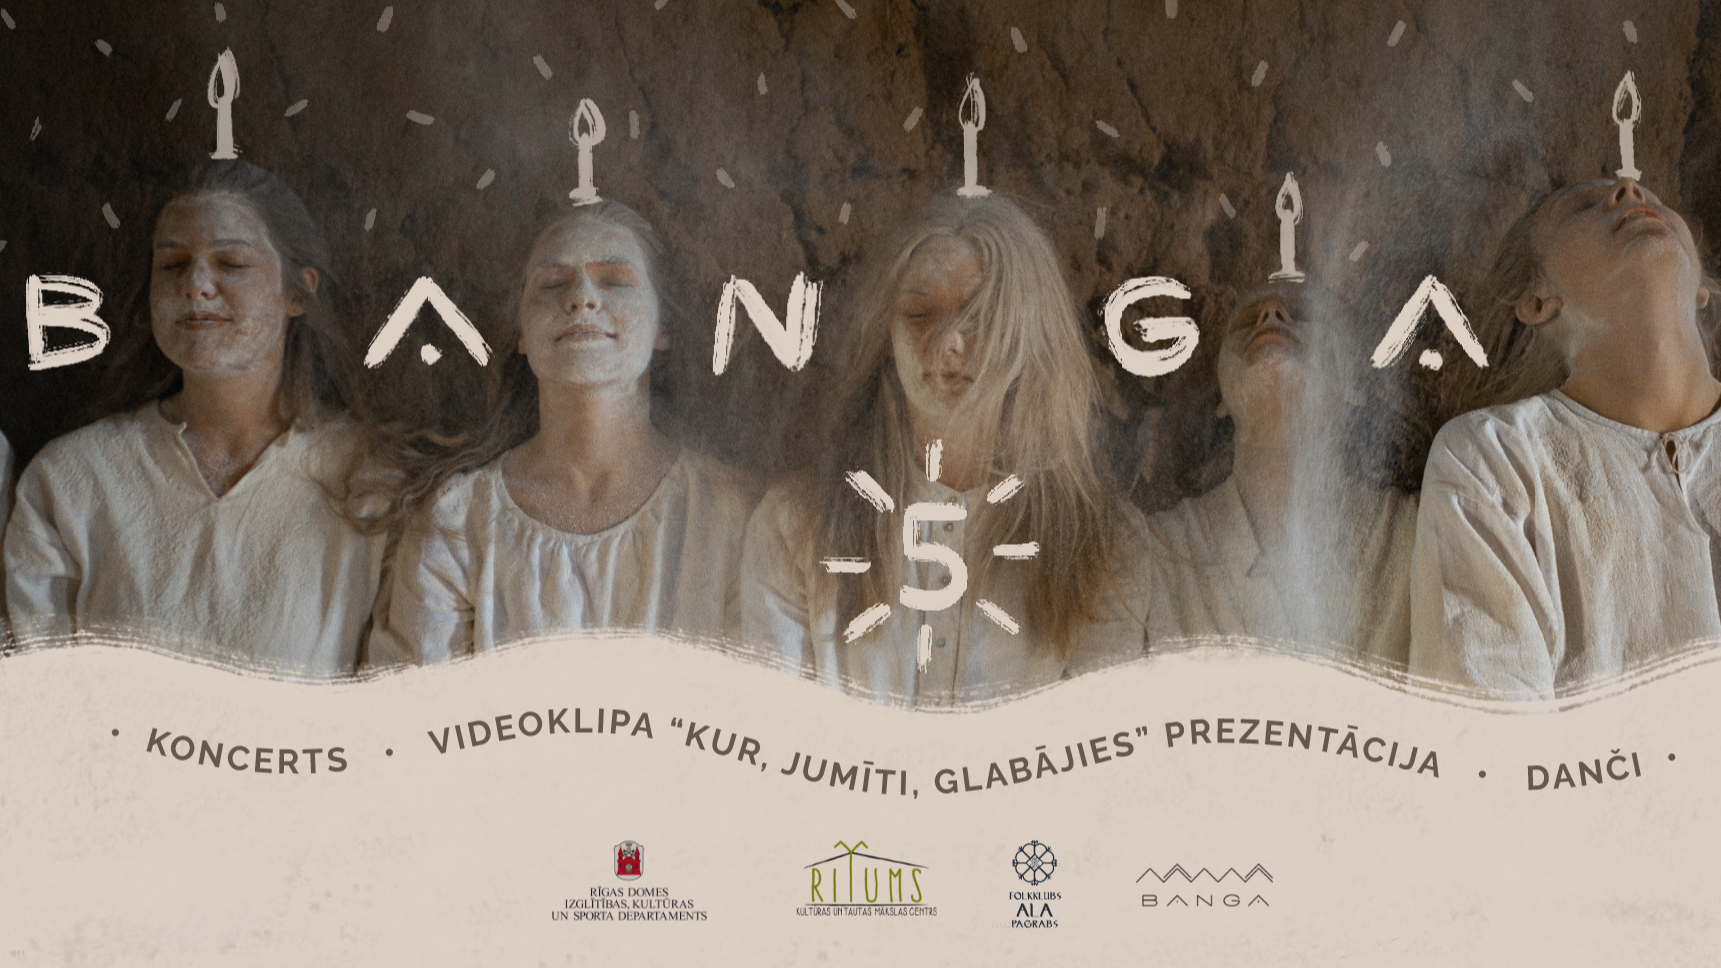 Jauniešu folkloras studija “Banga” aicina uz laikmetīga etnomūzikas videoklipa  “Kur, Jumīti, glabājies” prezentāciju